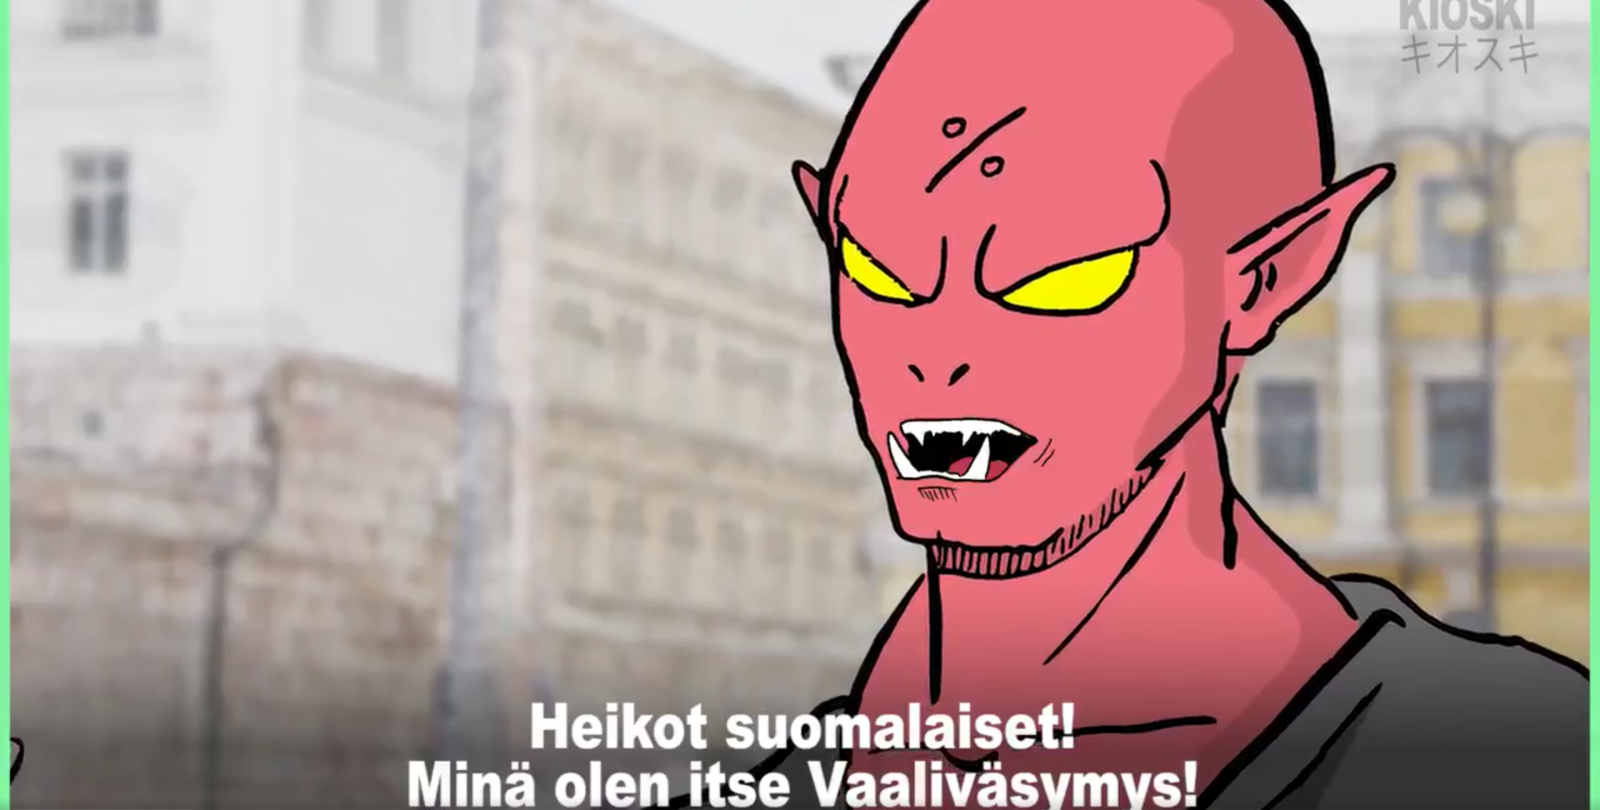 フィンランド国営放送が大統領選prでつくったアニメがなぜか日本語ですごい